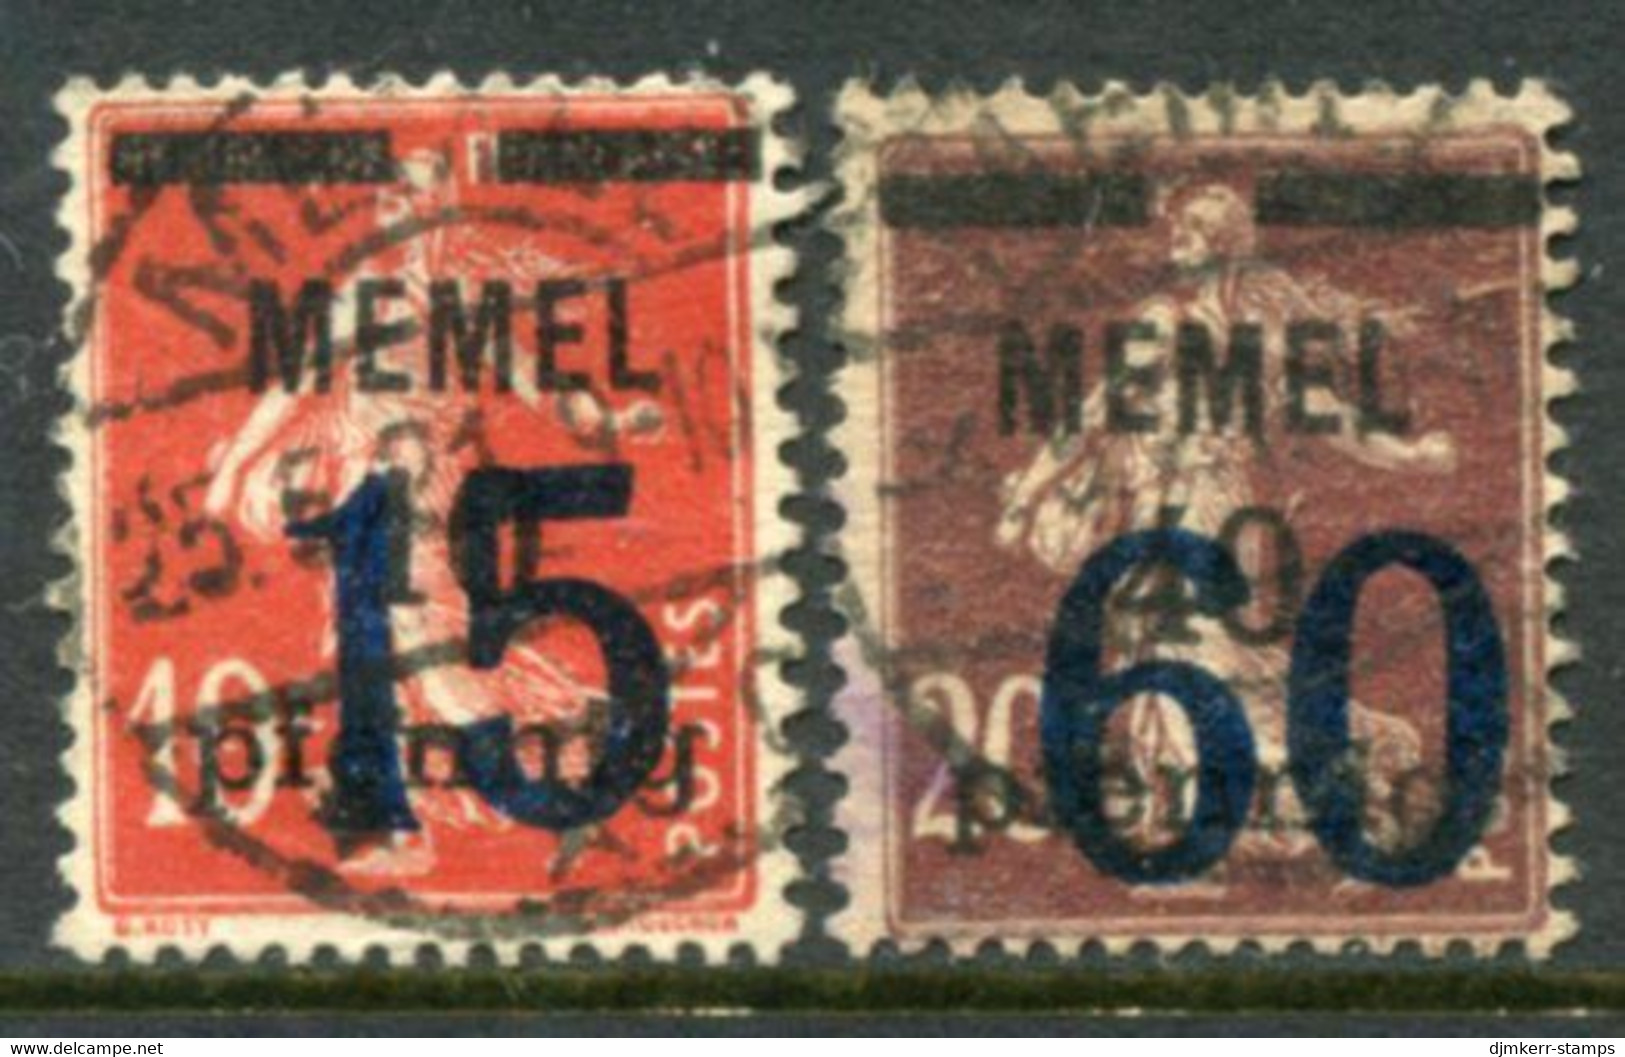 MEMEL 1921  Overprints 15 And 60 Used. Stonischken. Michel 34-35 - Memel (Klaïpeda) 1923